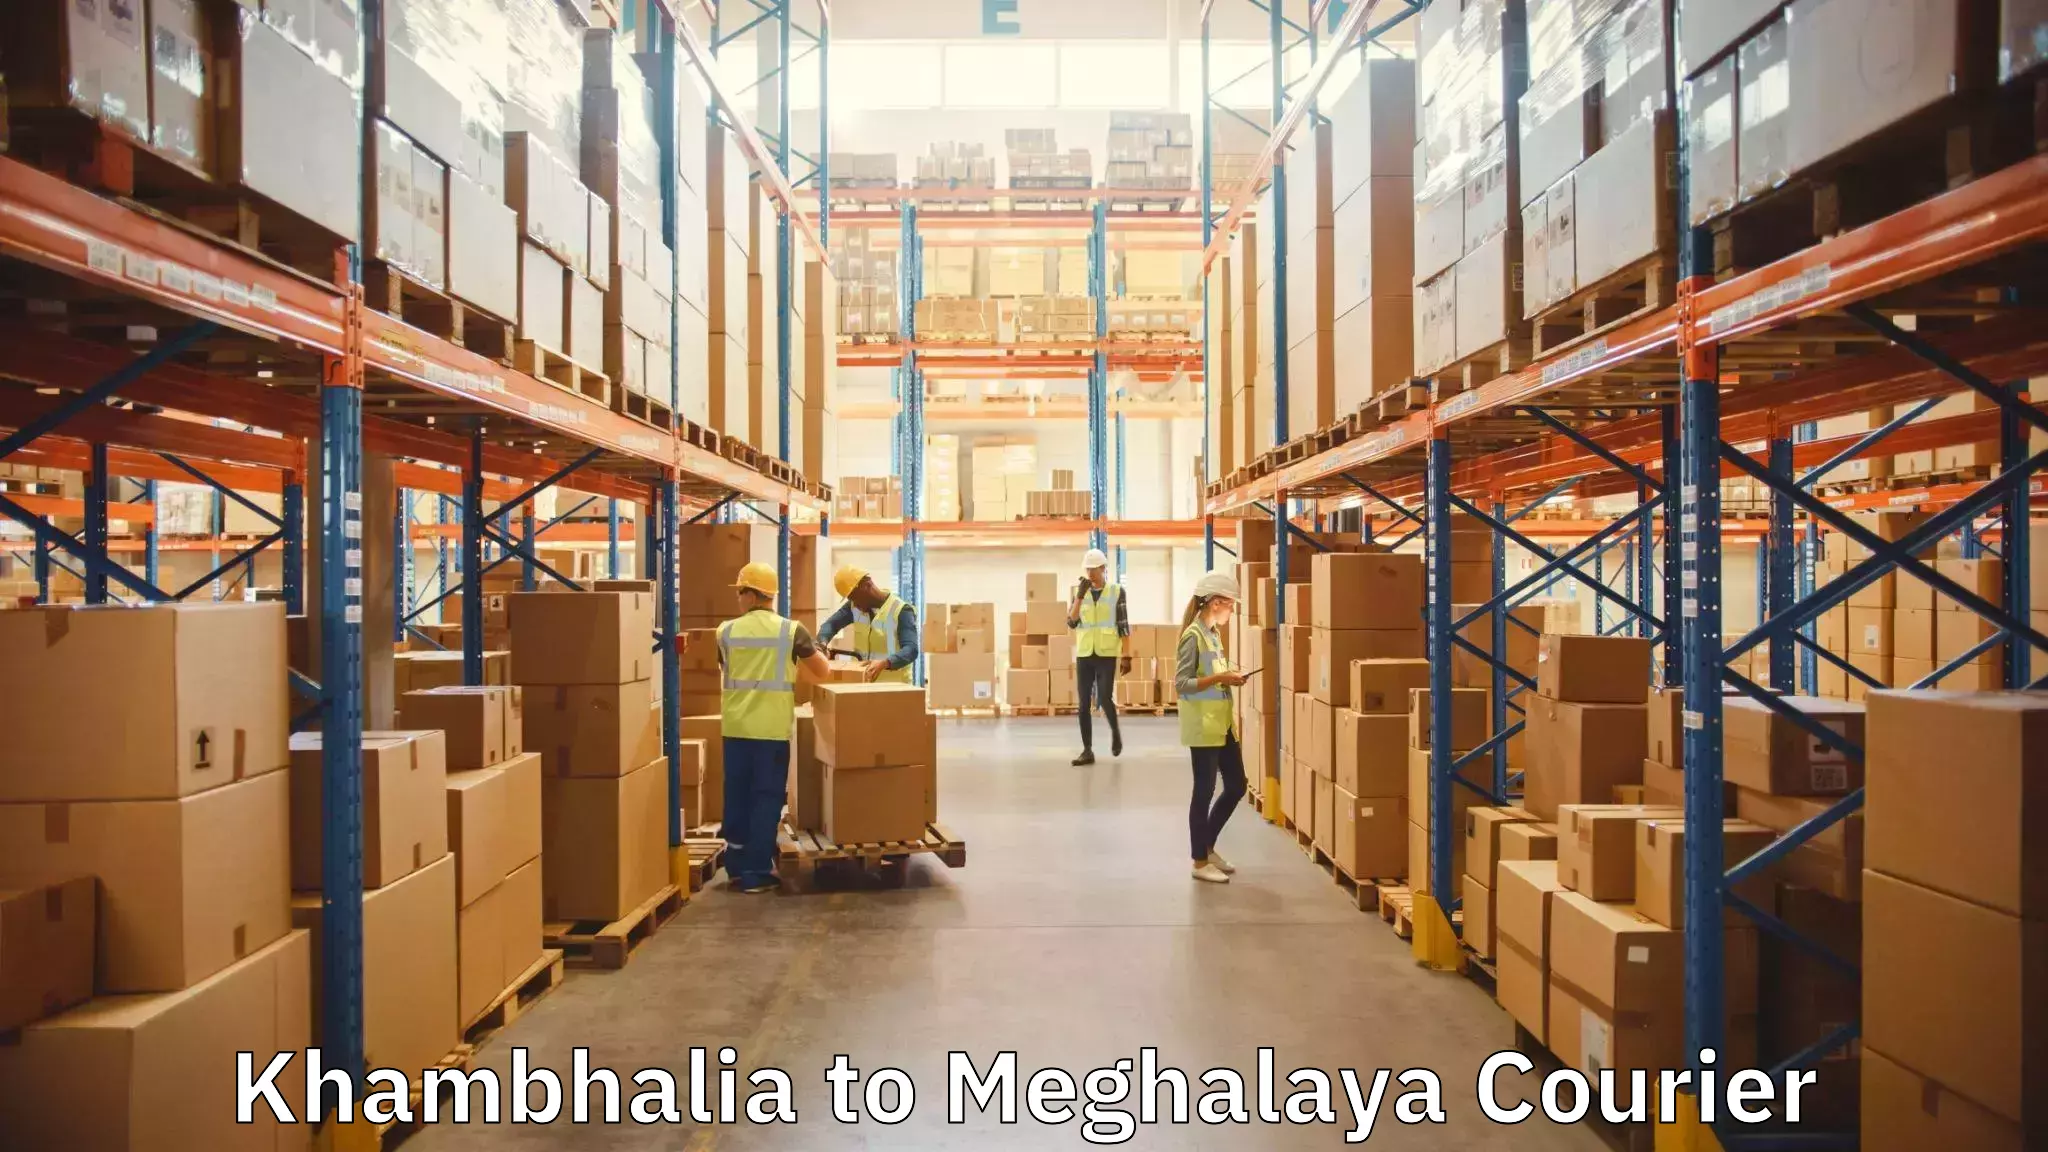 Professional moving company Khambhalia to Phulbari